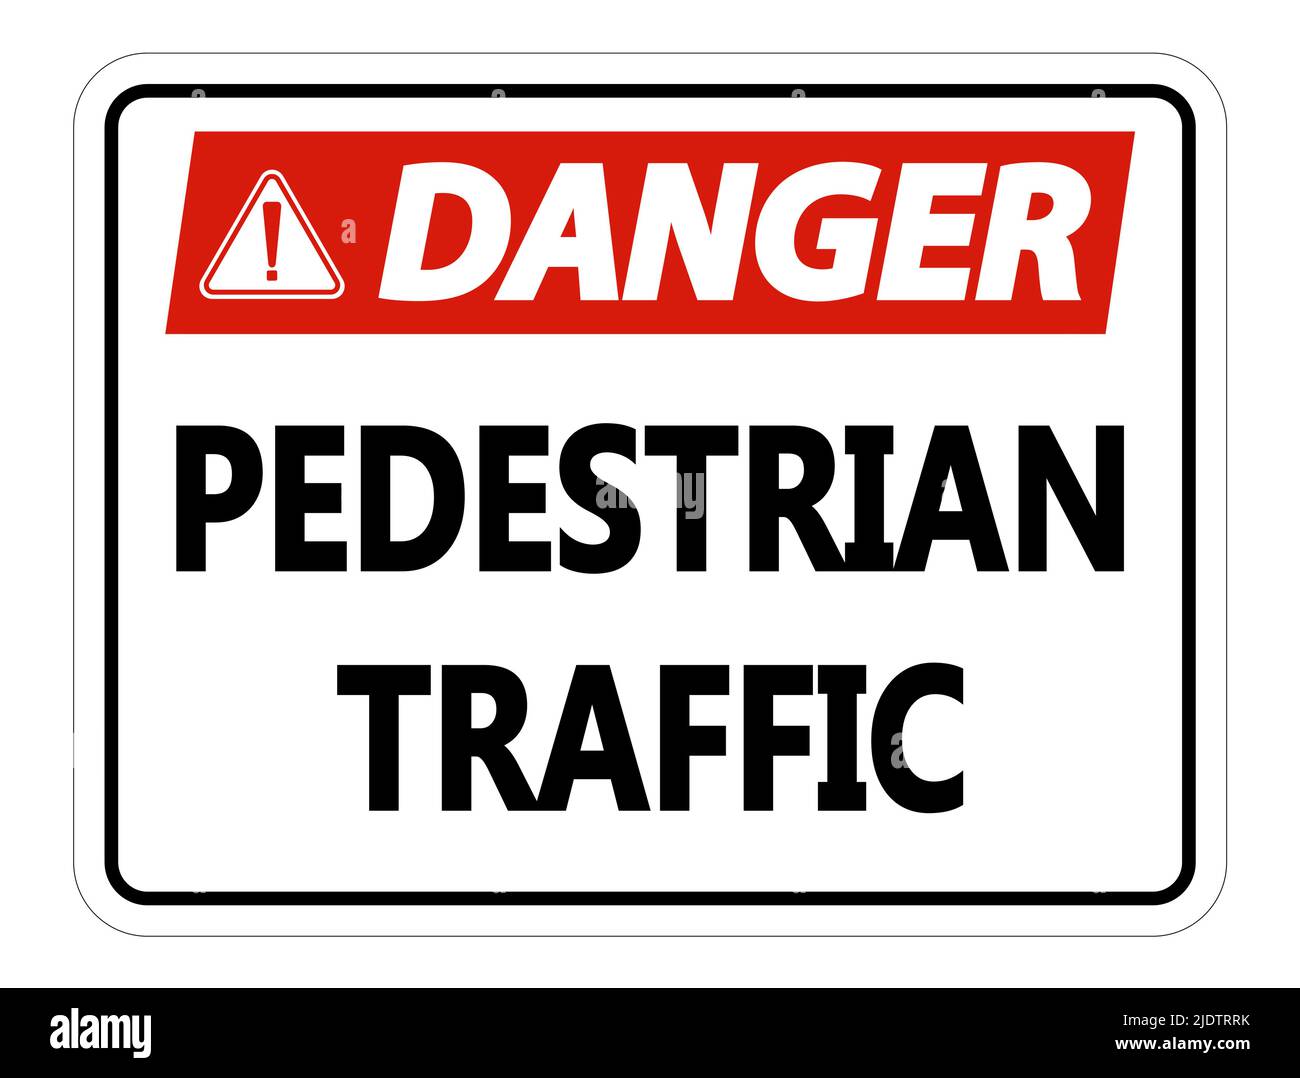 Danger Pedestrian Traffic Sign on white background,vector illustration Stock Vector